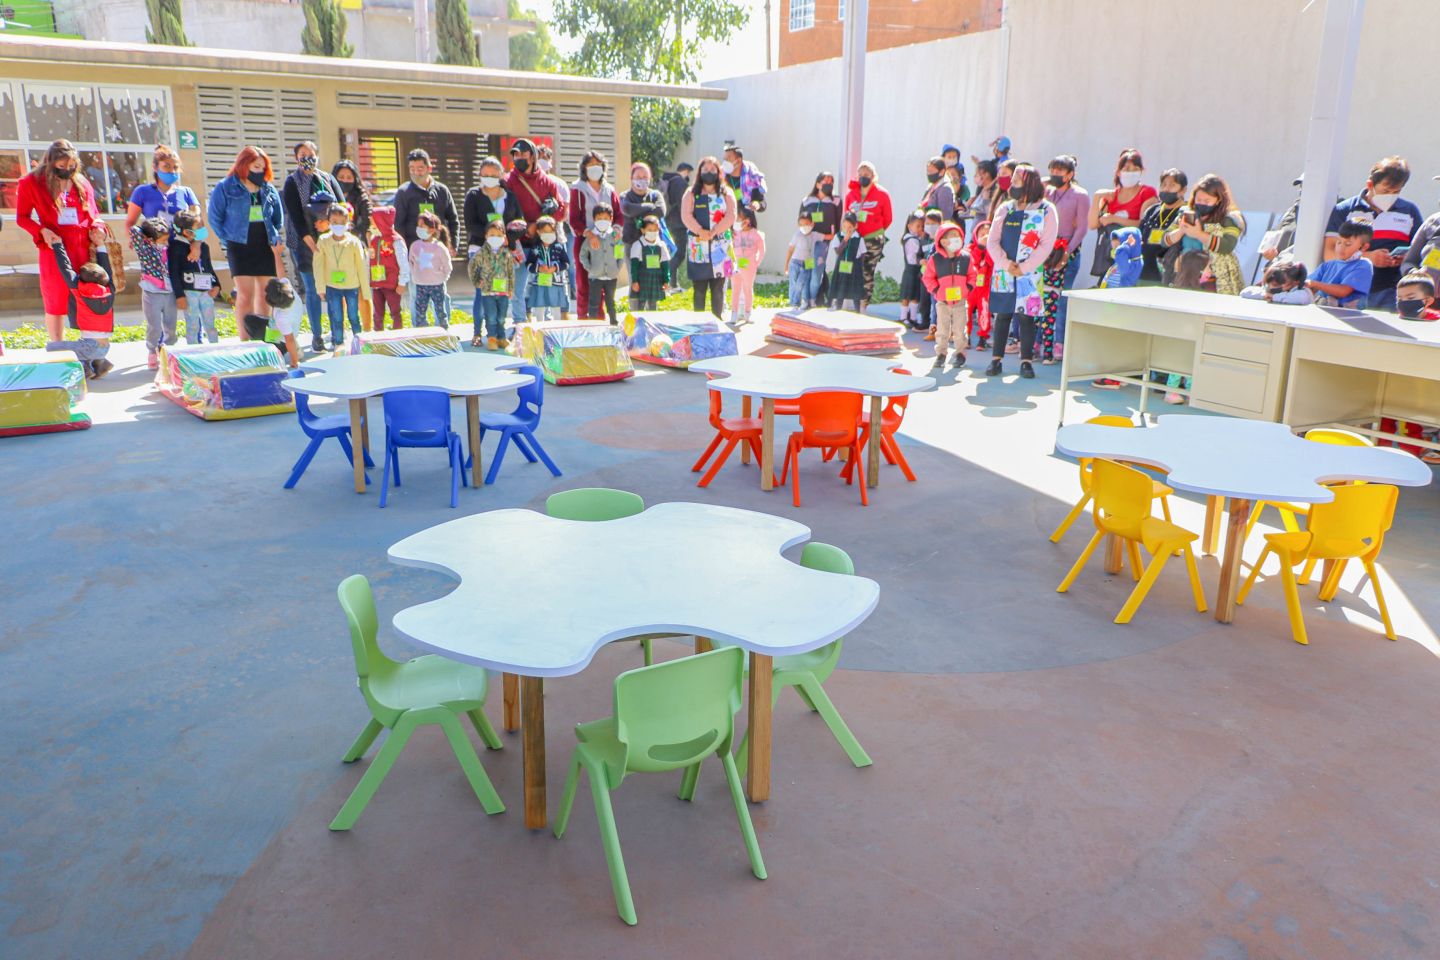 
Gobierno municipal de Chimalhuacan y SEDATU entregan mobiliario a escuelas
